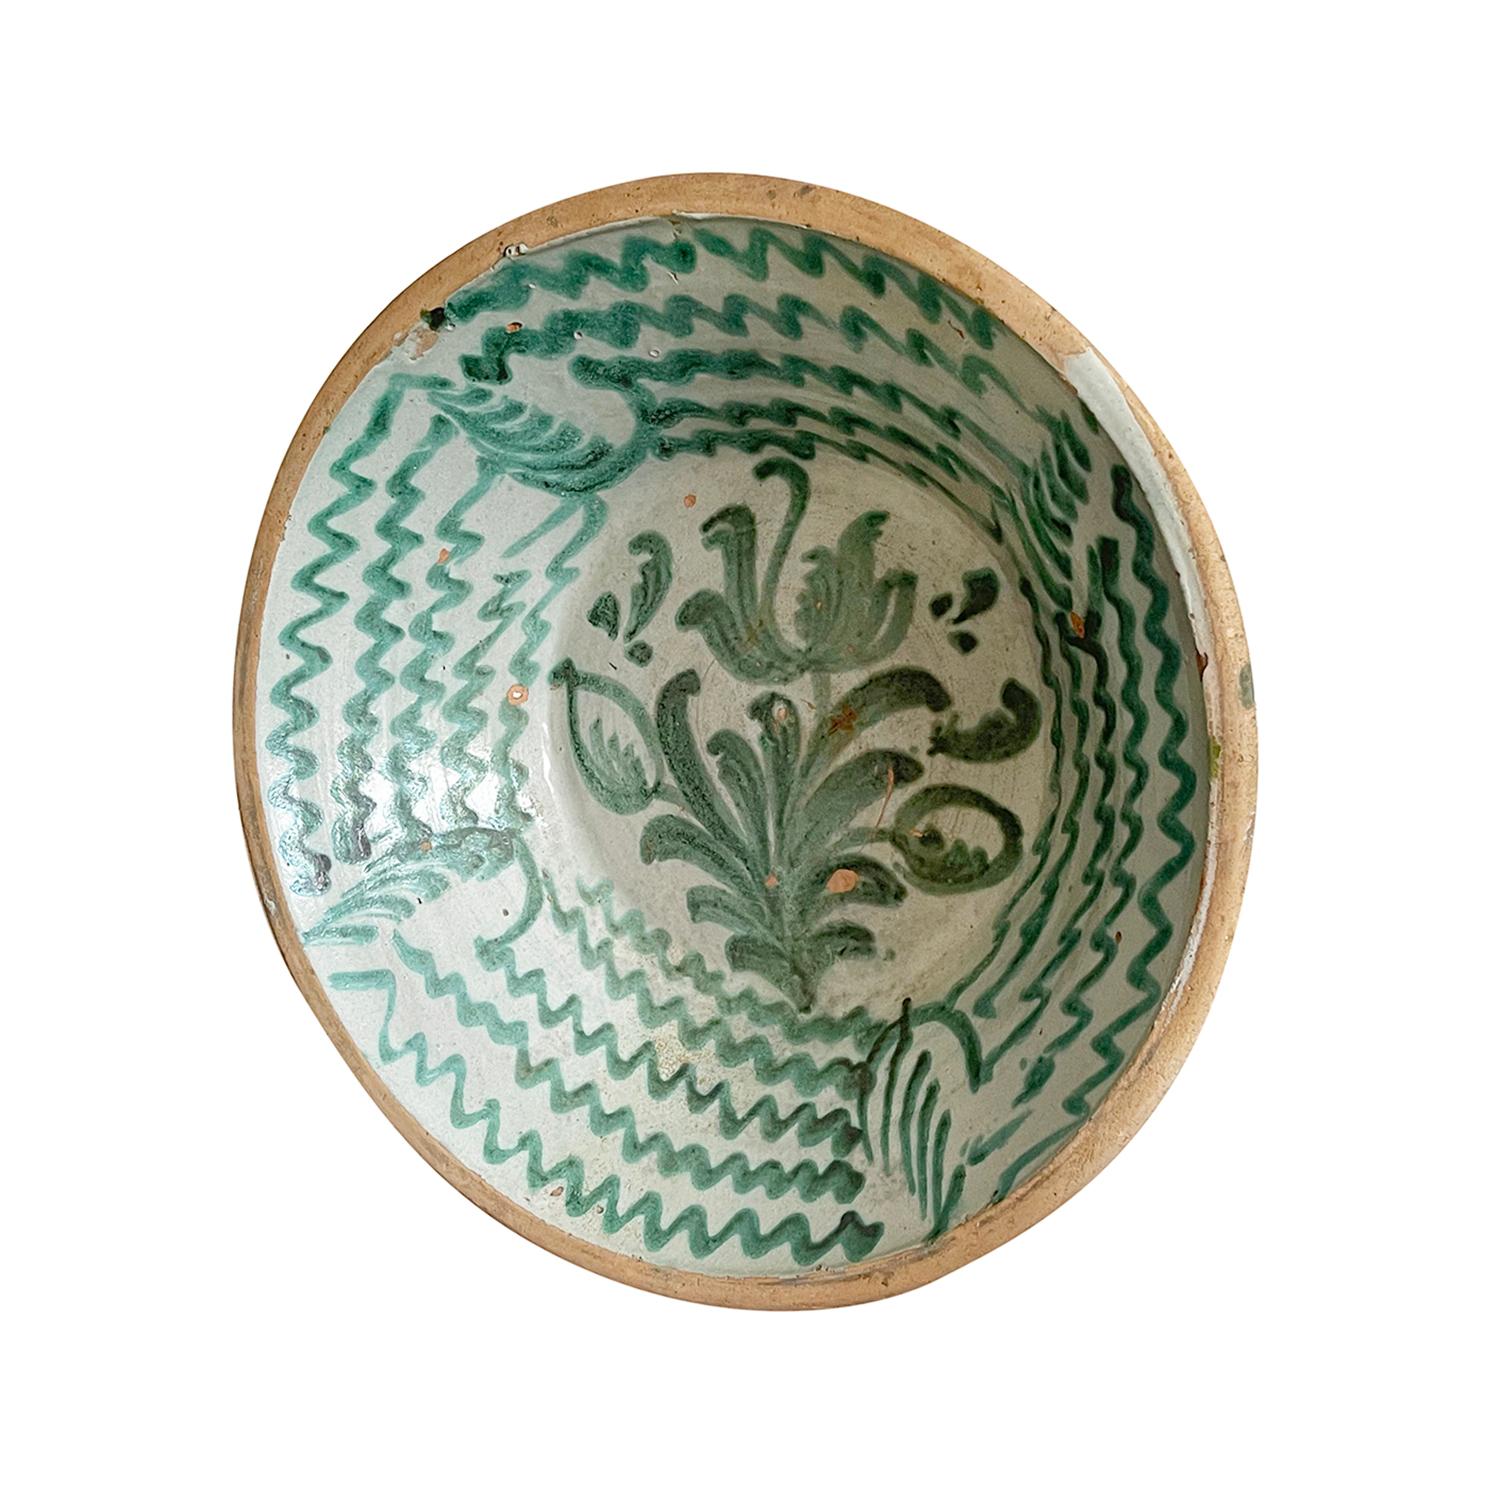 Eine große antike spanische Lebrillo-Schale aus handgefertigter Terrakotta, die aus Granada, Spanien, stammt. Mit einem Glasurdekor im typischen Morisco-Grün über einer milchweißen Glasur. Auf dem flachen Boden der Schale ist ein florales Motiv